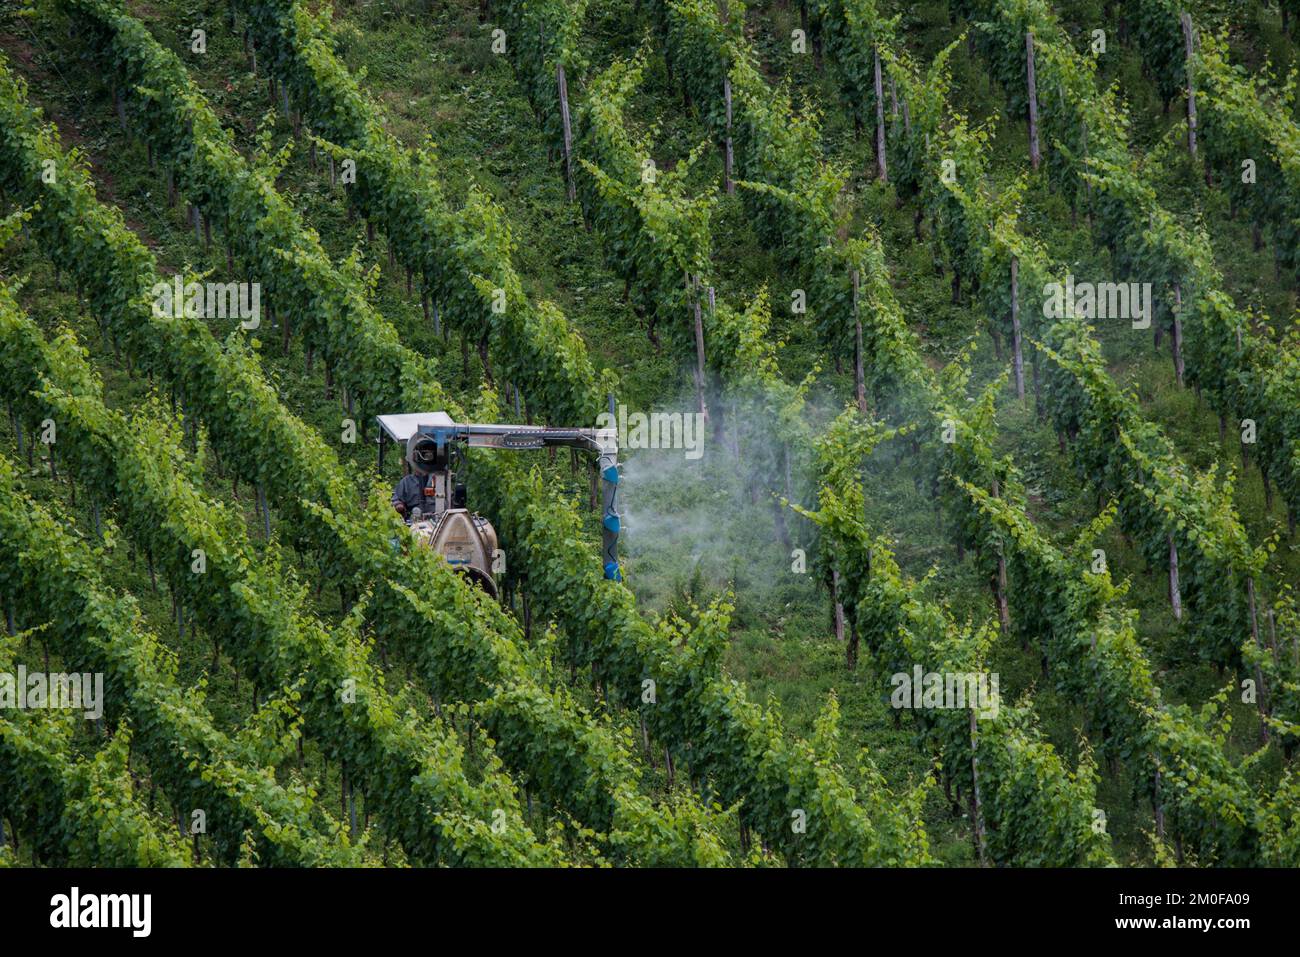 Pestizideinsatz im Weinbau im Moseltal, Deutschland, Rheinland-Pfalz Stockfoto